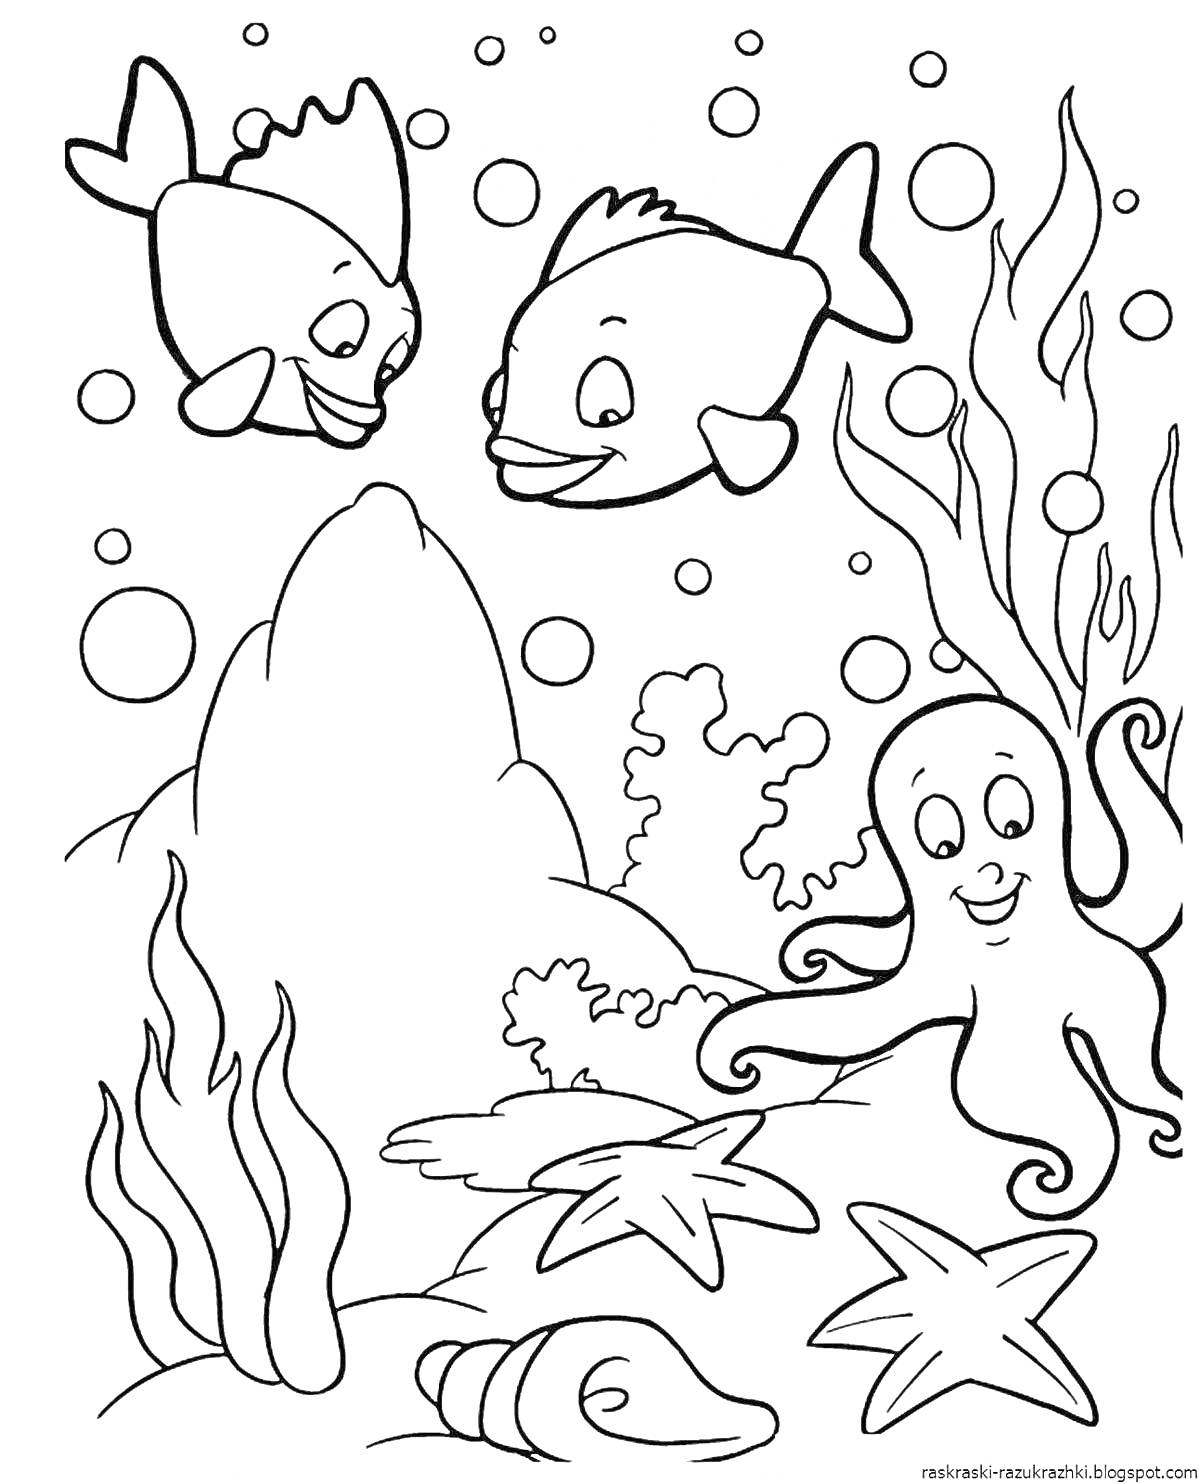 Раскраска Две рыбы, осьминог, водоросли, камень, морские звезды, пузырьки